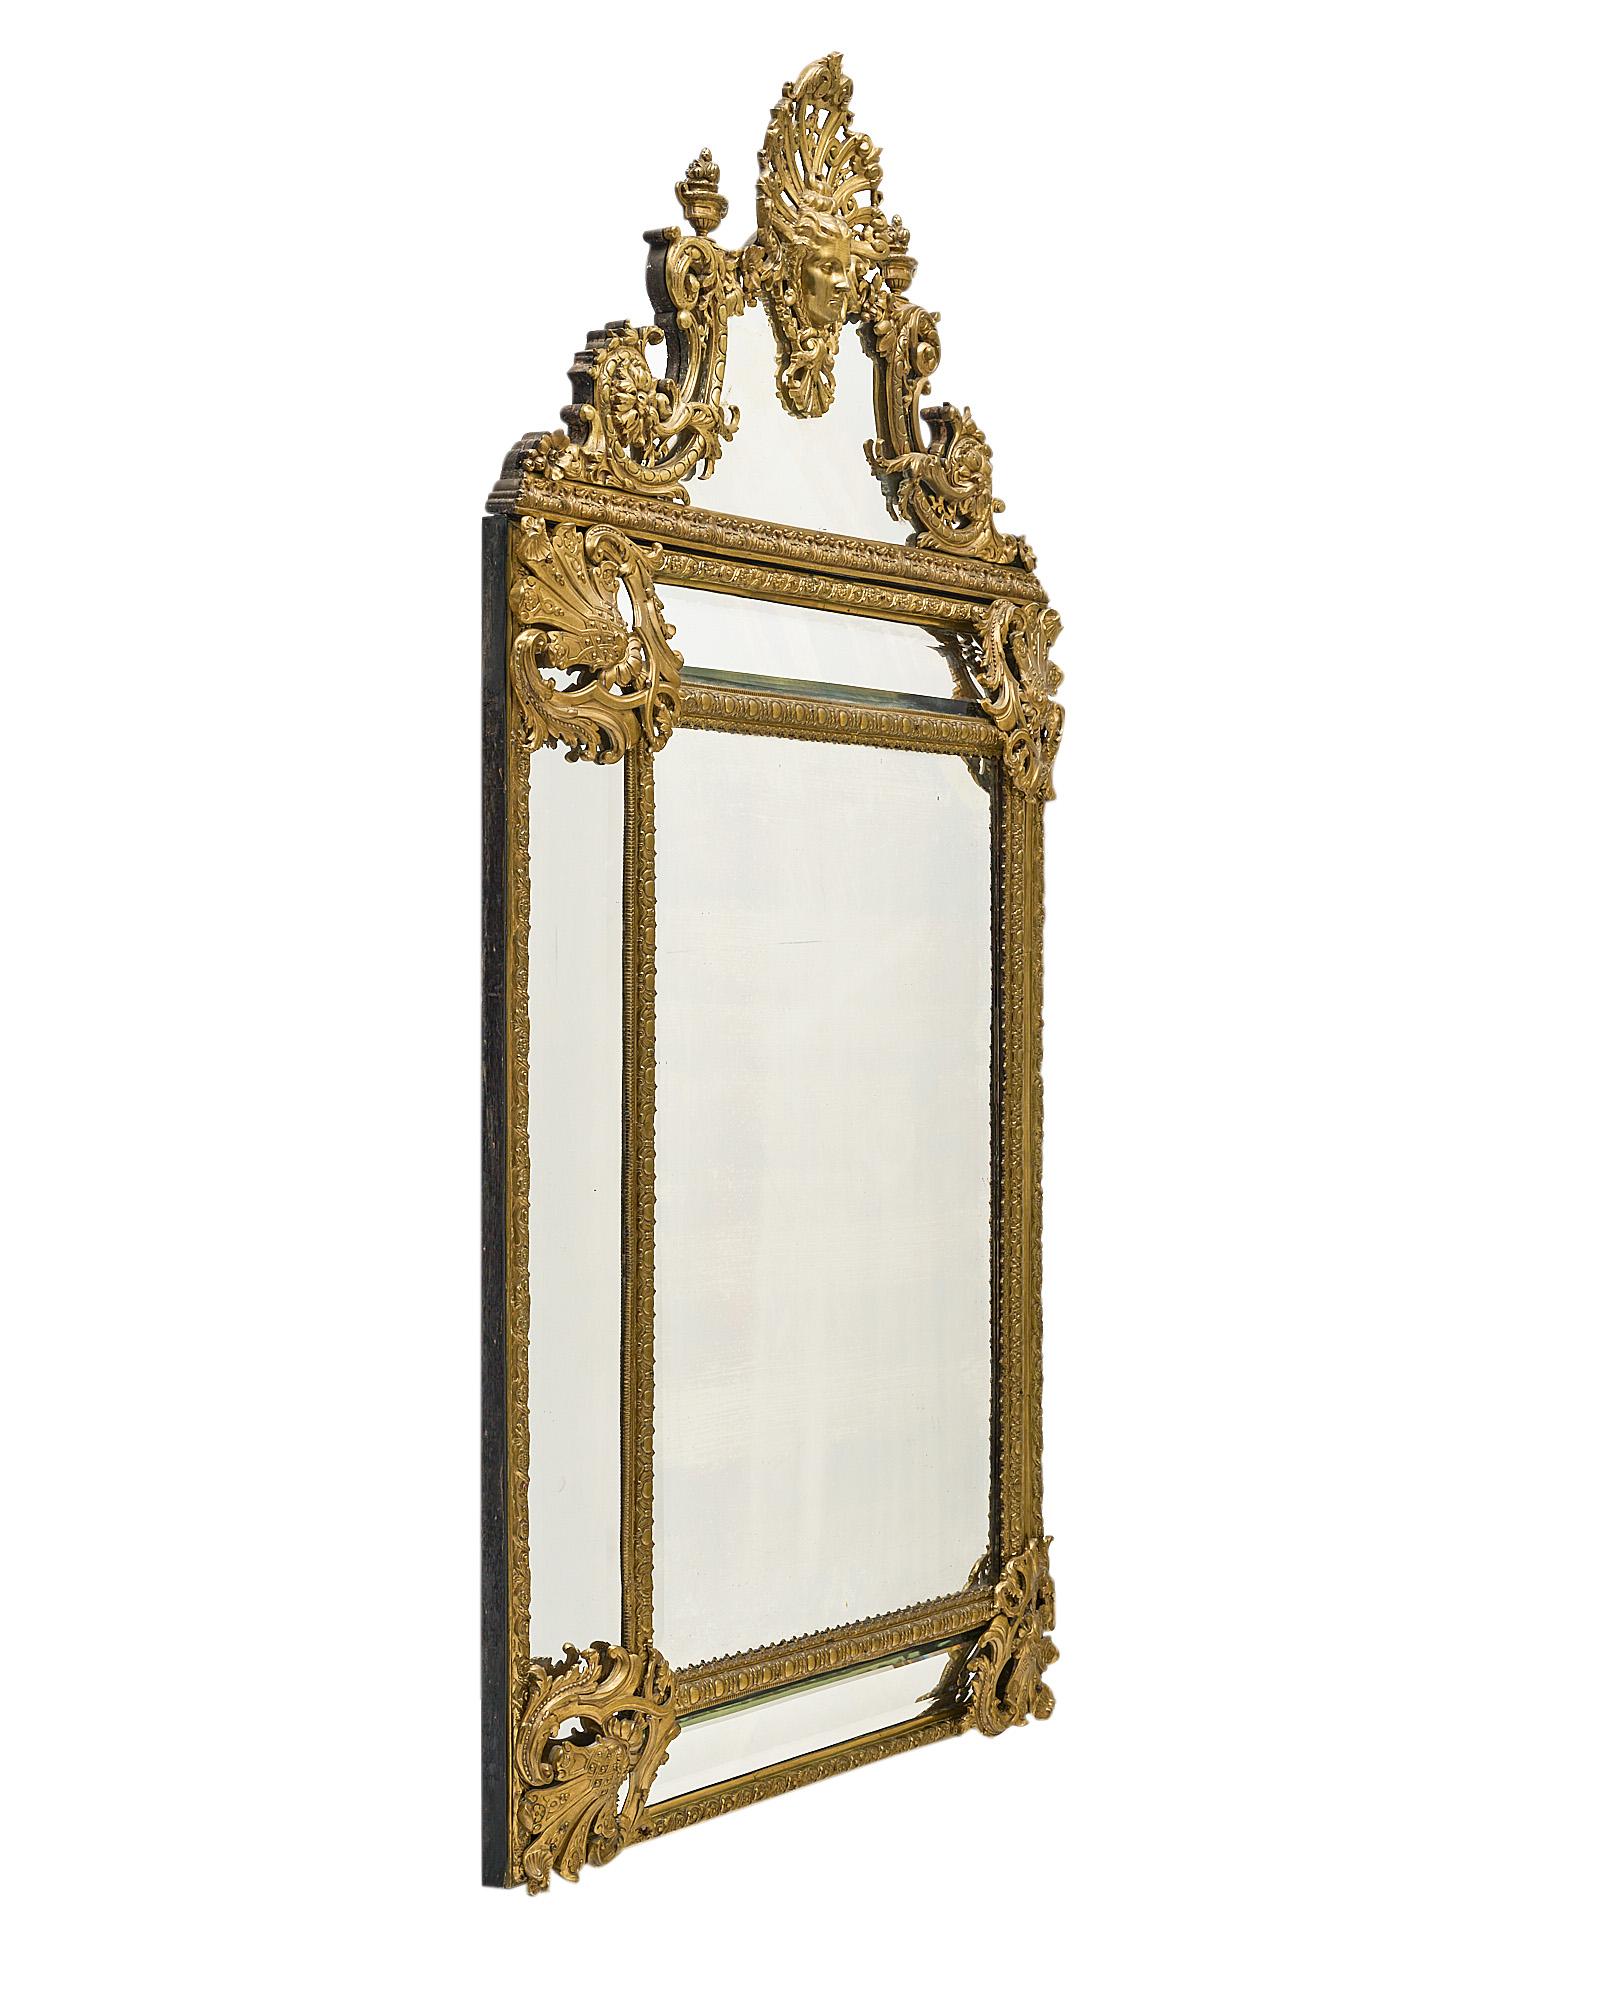 Miroir, français, de la période Napoléon III. Cette pièce est réalisée en bronze ormolu finement coulé, avec un décor complexe de frises, de 